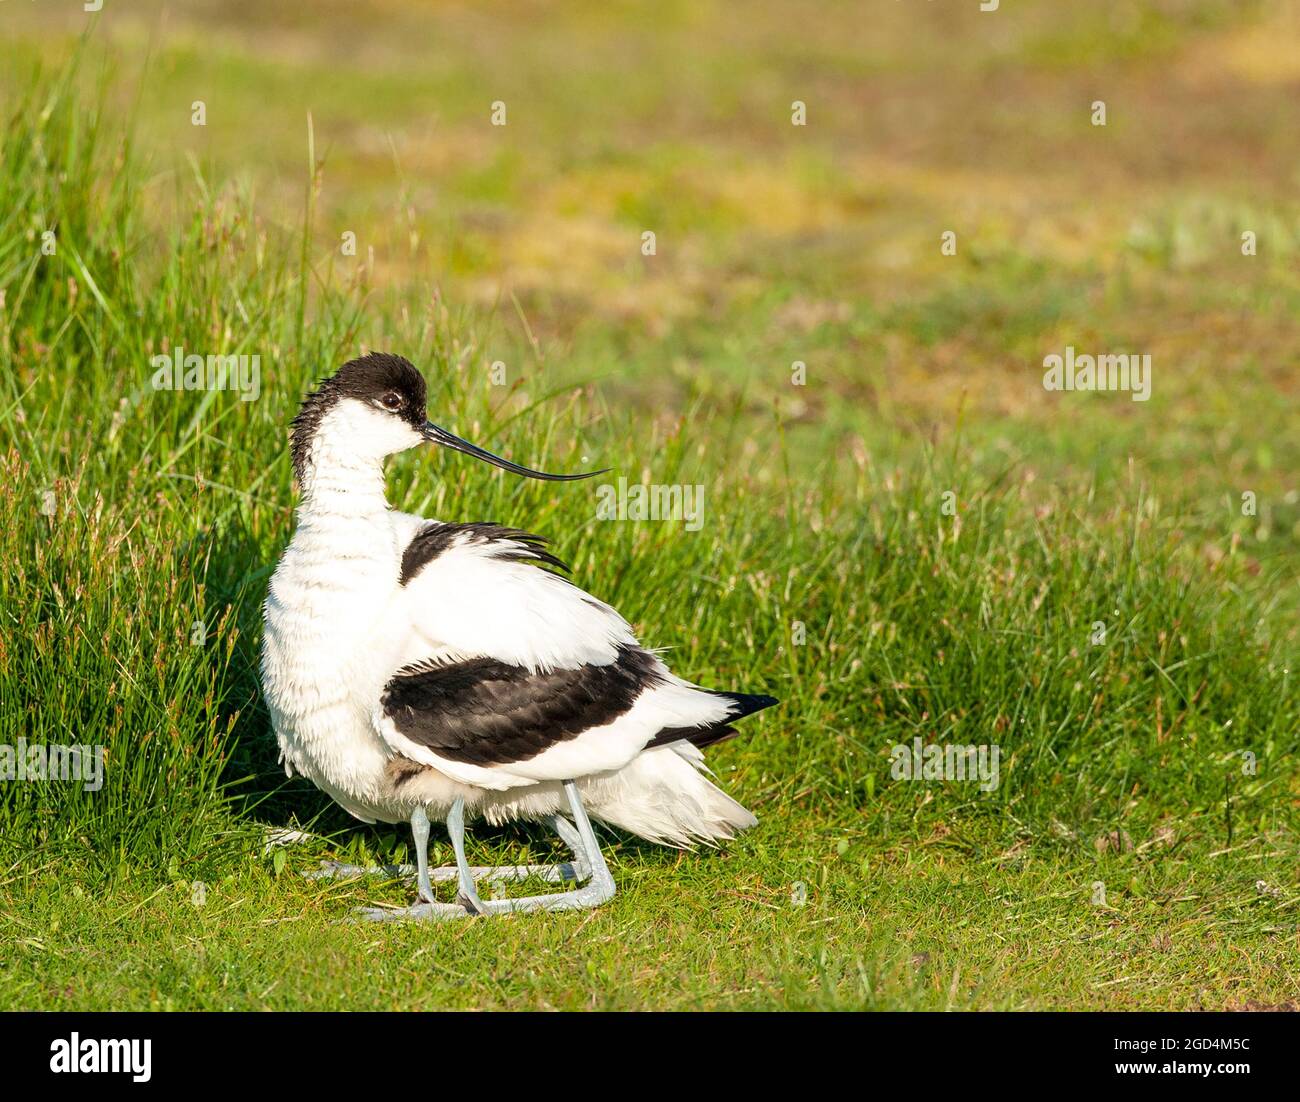 Pied Avocet (Recurvirostra avosetta) adulte perché sur du gras avec poussin sous le corps Banque D'Images